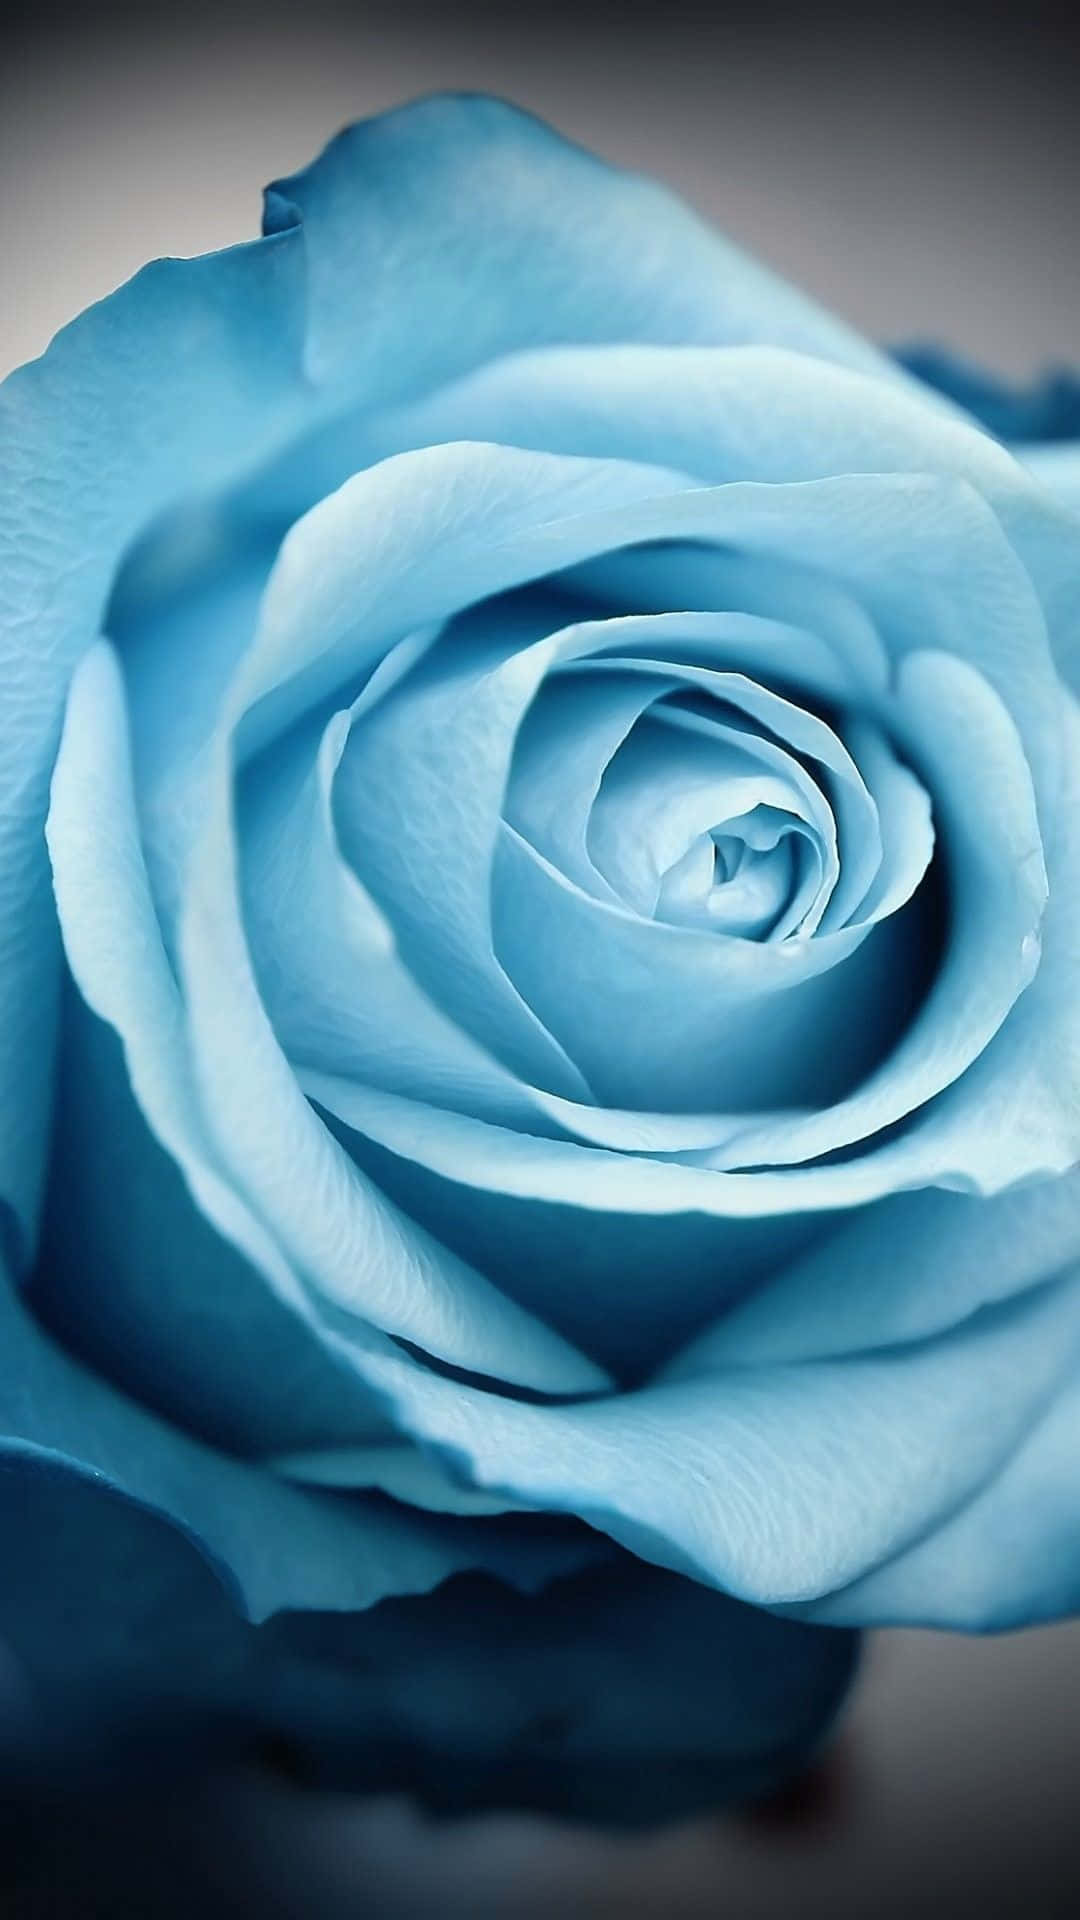 Blomst Iphone Blå Rose Tæt Op Billeder